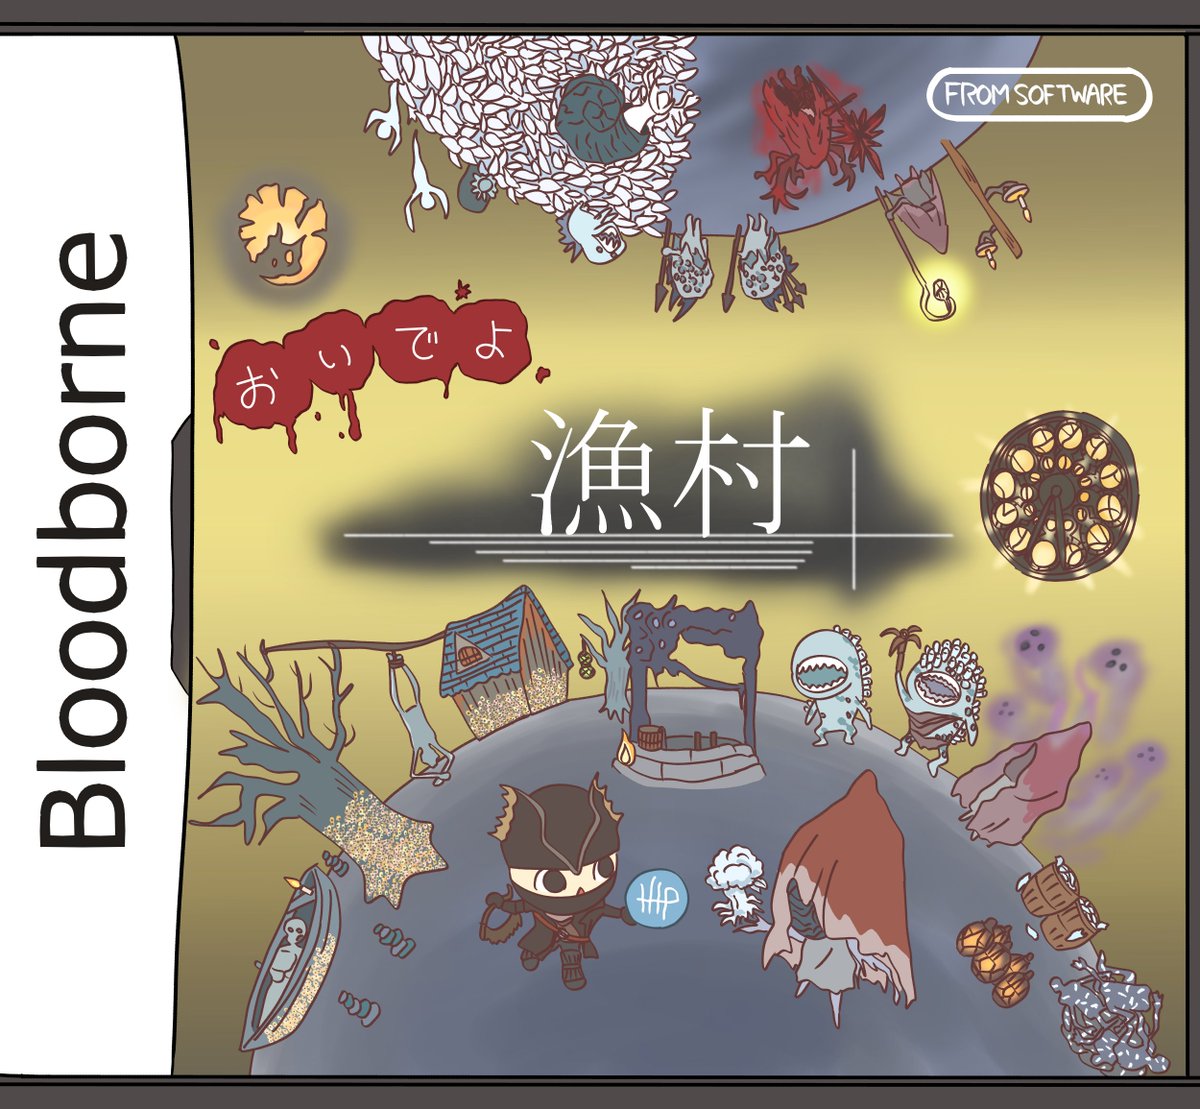 ぱちーづる Bloodborne 5周年めでたい 例によって過去絵で申し訳ないけどお祝いの気持ちをば汲んでいただければ幸い Bloodborne Bloodborne5thanniversary